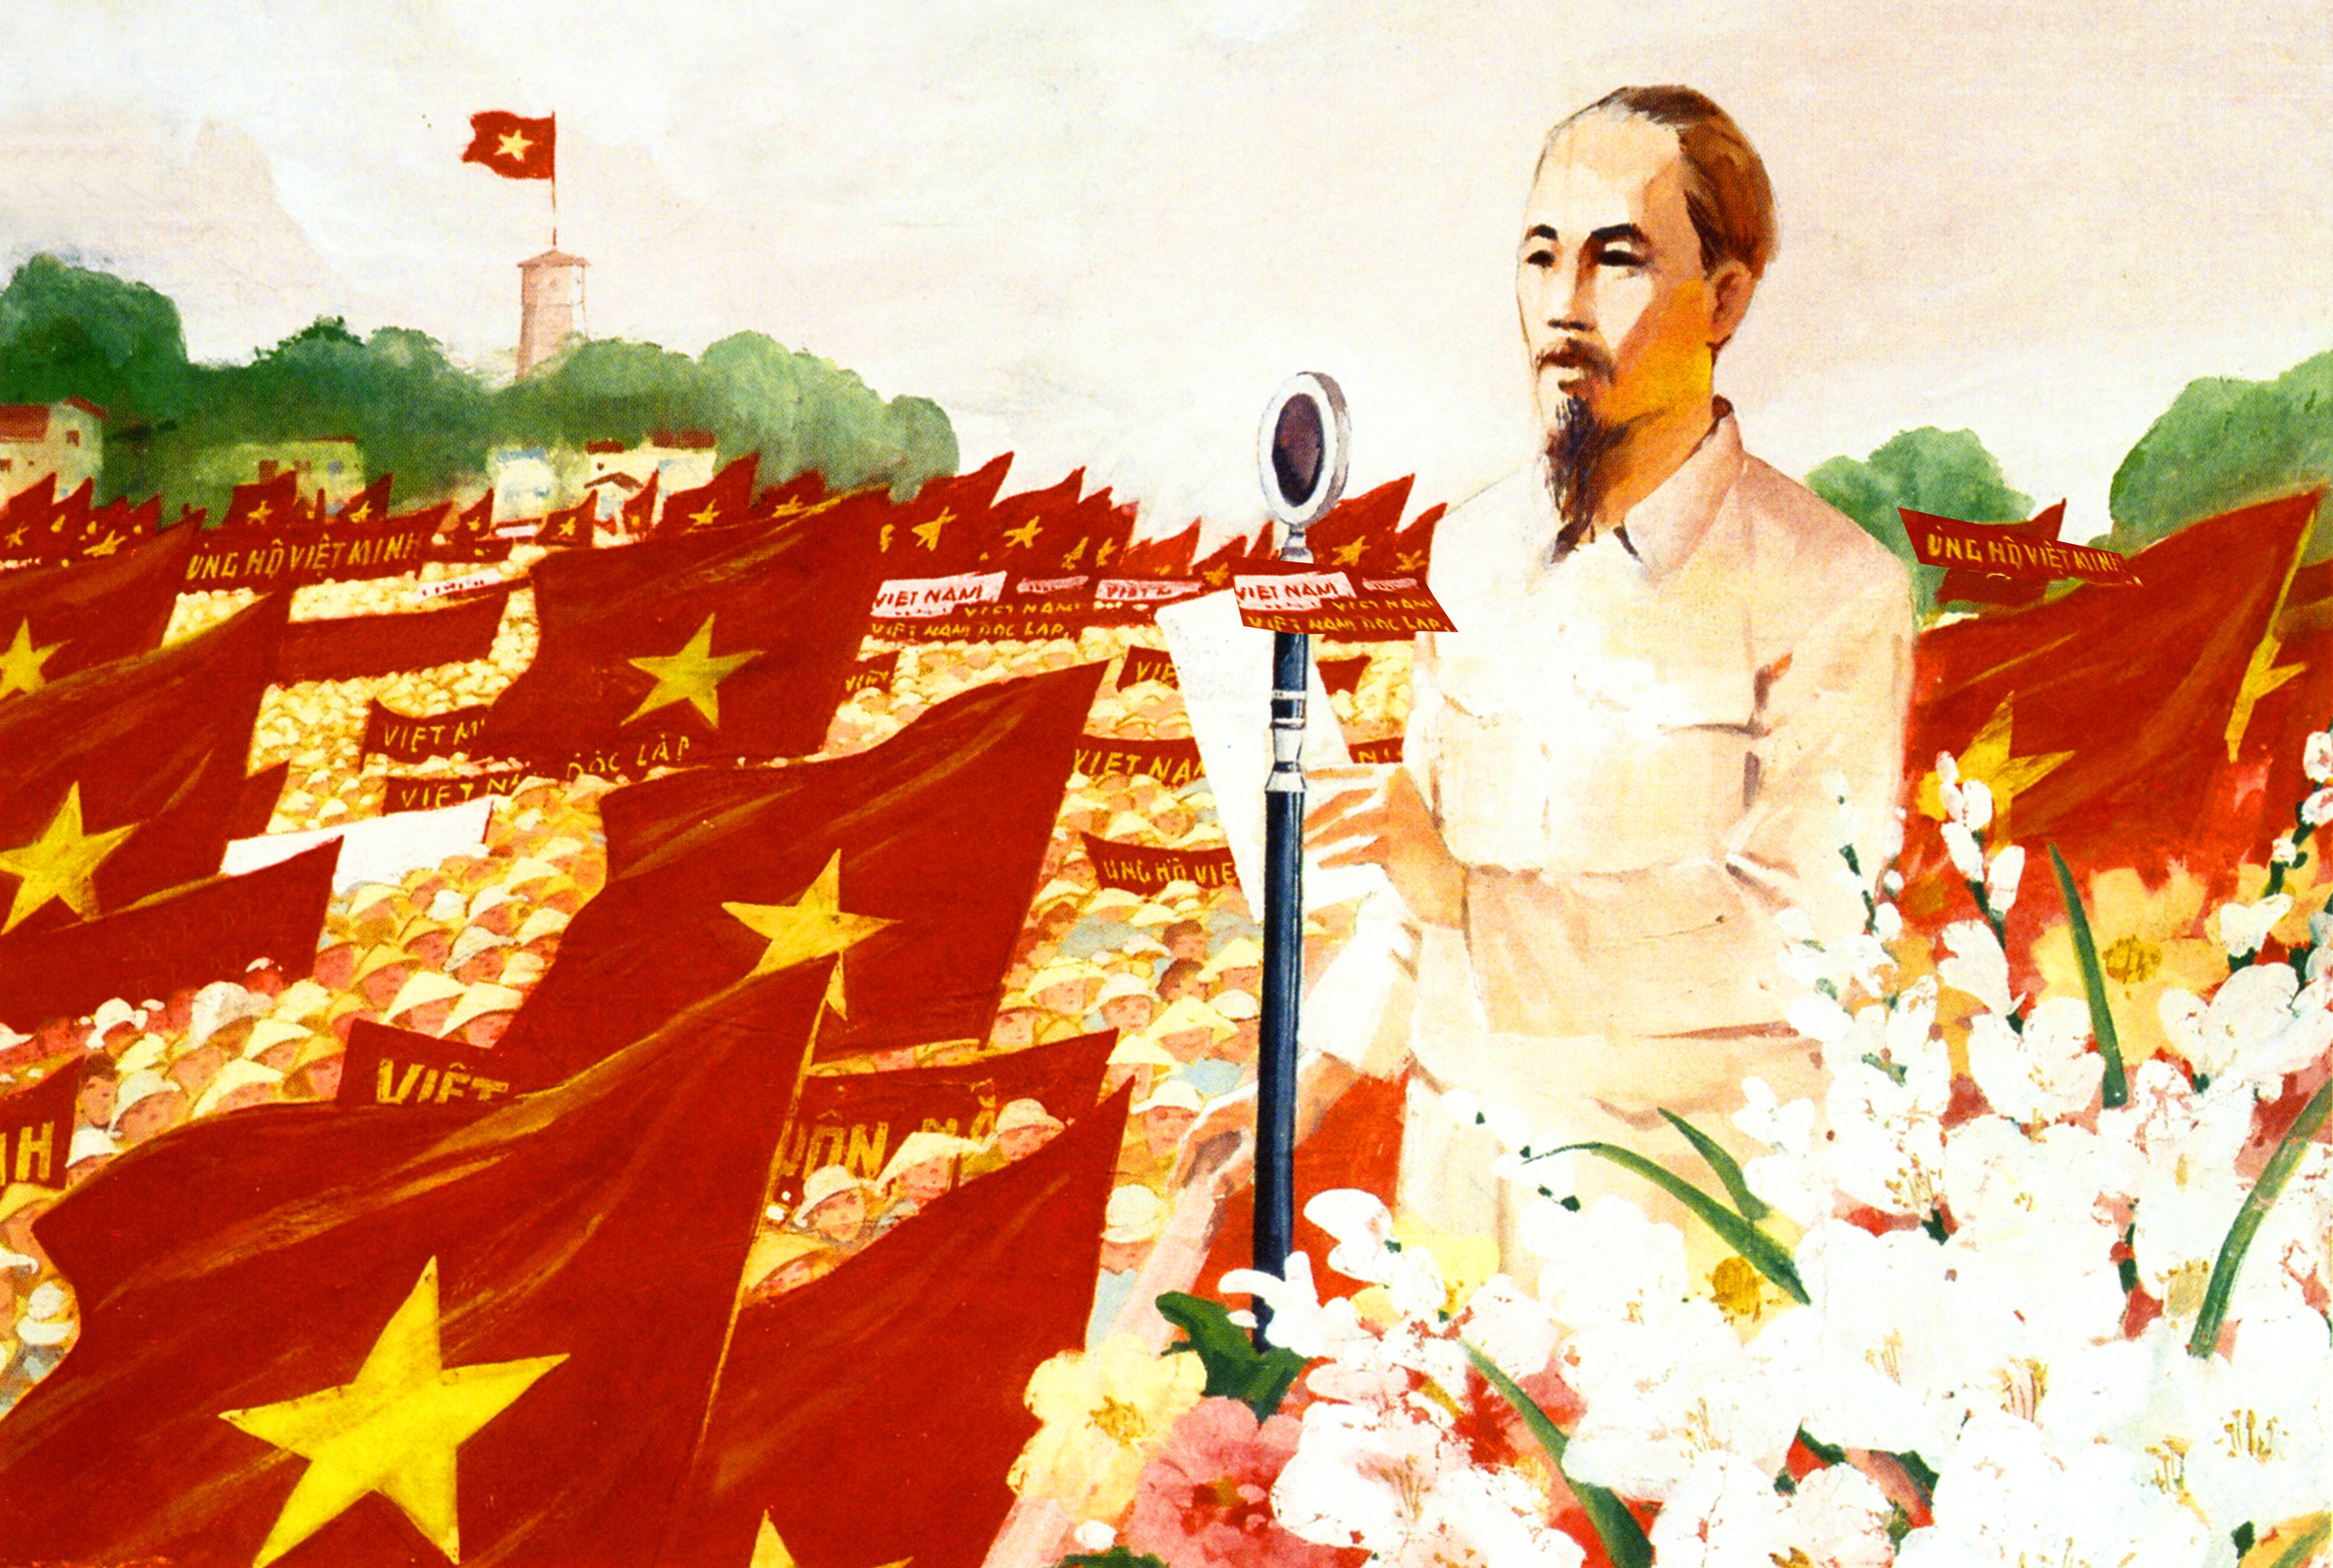 Cách mạng tháng Tám đã cho thấy sự kiên trì và quyết tâm của người Việt Nam trong việc đấu tranh cho độc lập. Việc xem những bức ảnh liên quan đến cách mạng này sẽ giúp chúng ta hiểu hơn về sự nỗ lực của thế hệ trước và khích lệ chúng ta cùng tiếp tục đóng góp cho sự phát triển của đất nước.